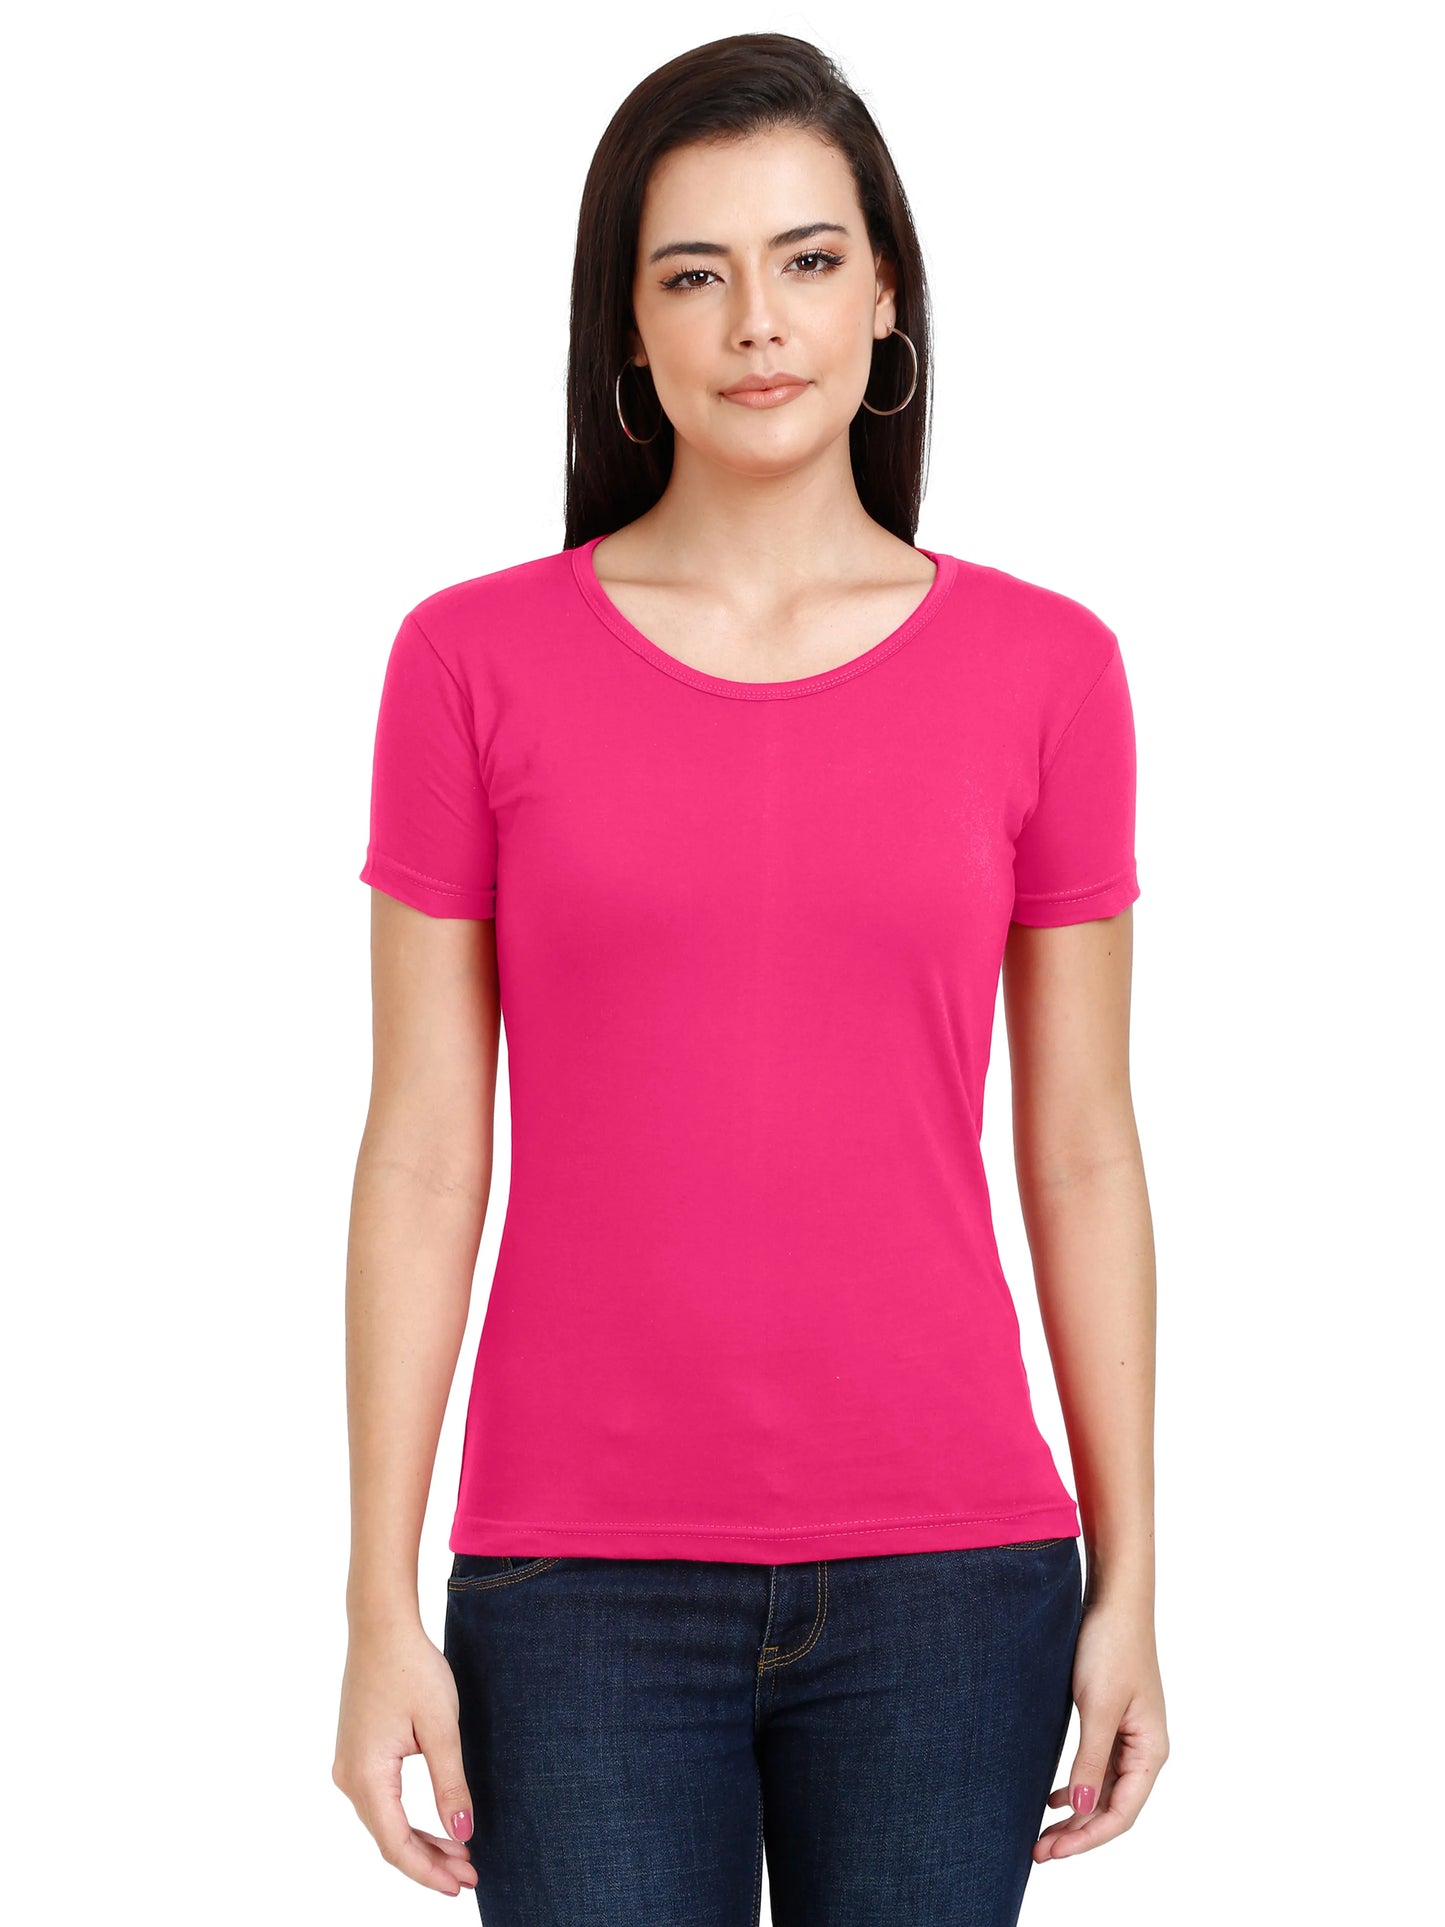 Women's Cotton Plain Round Neck Half Sleeve Pink Color T-Shirt